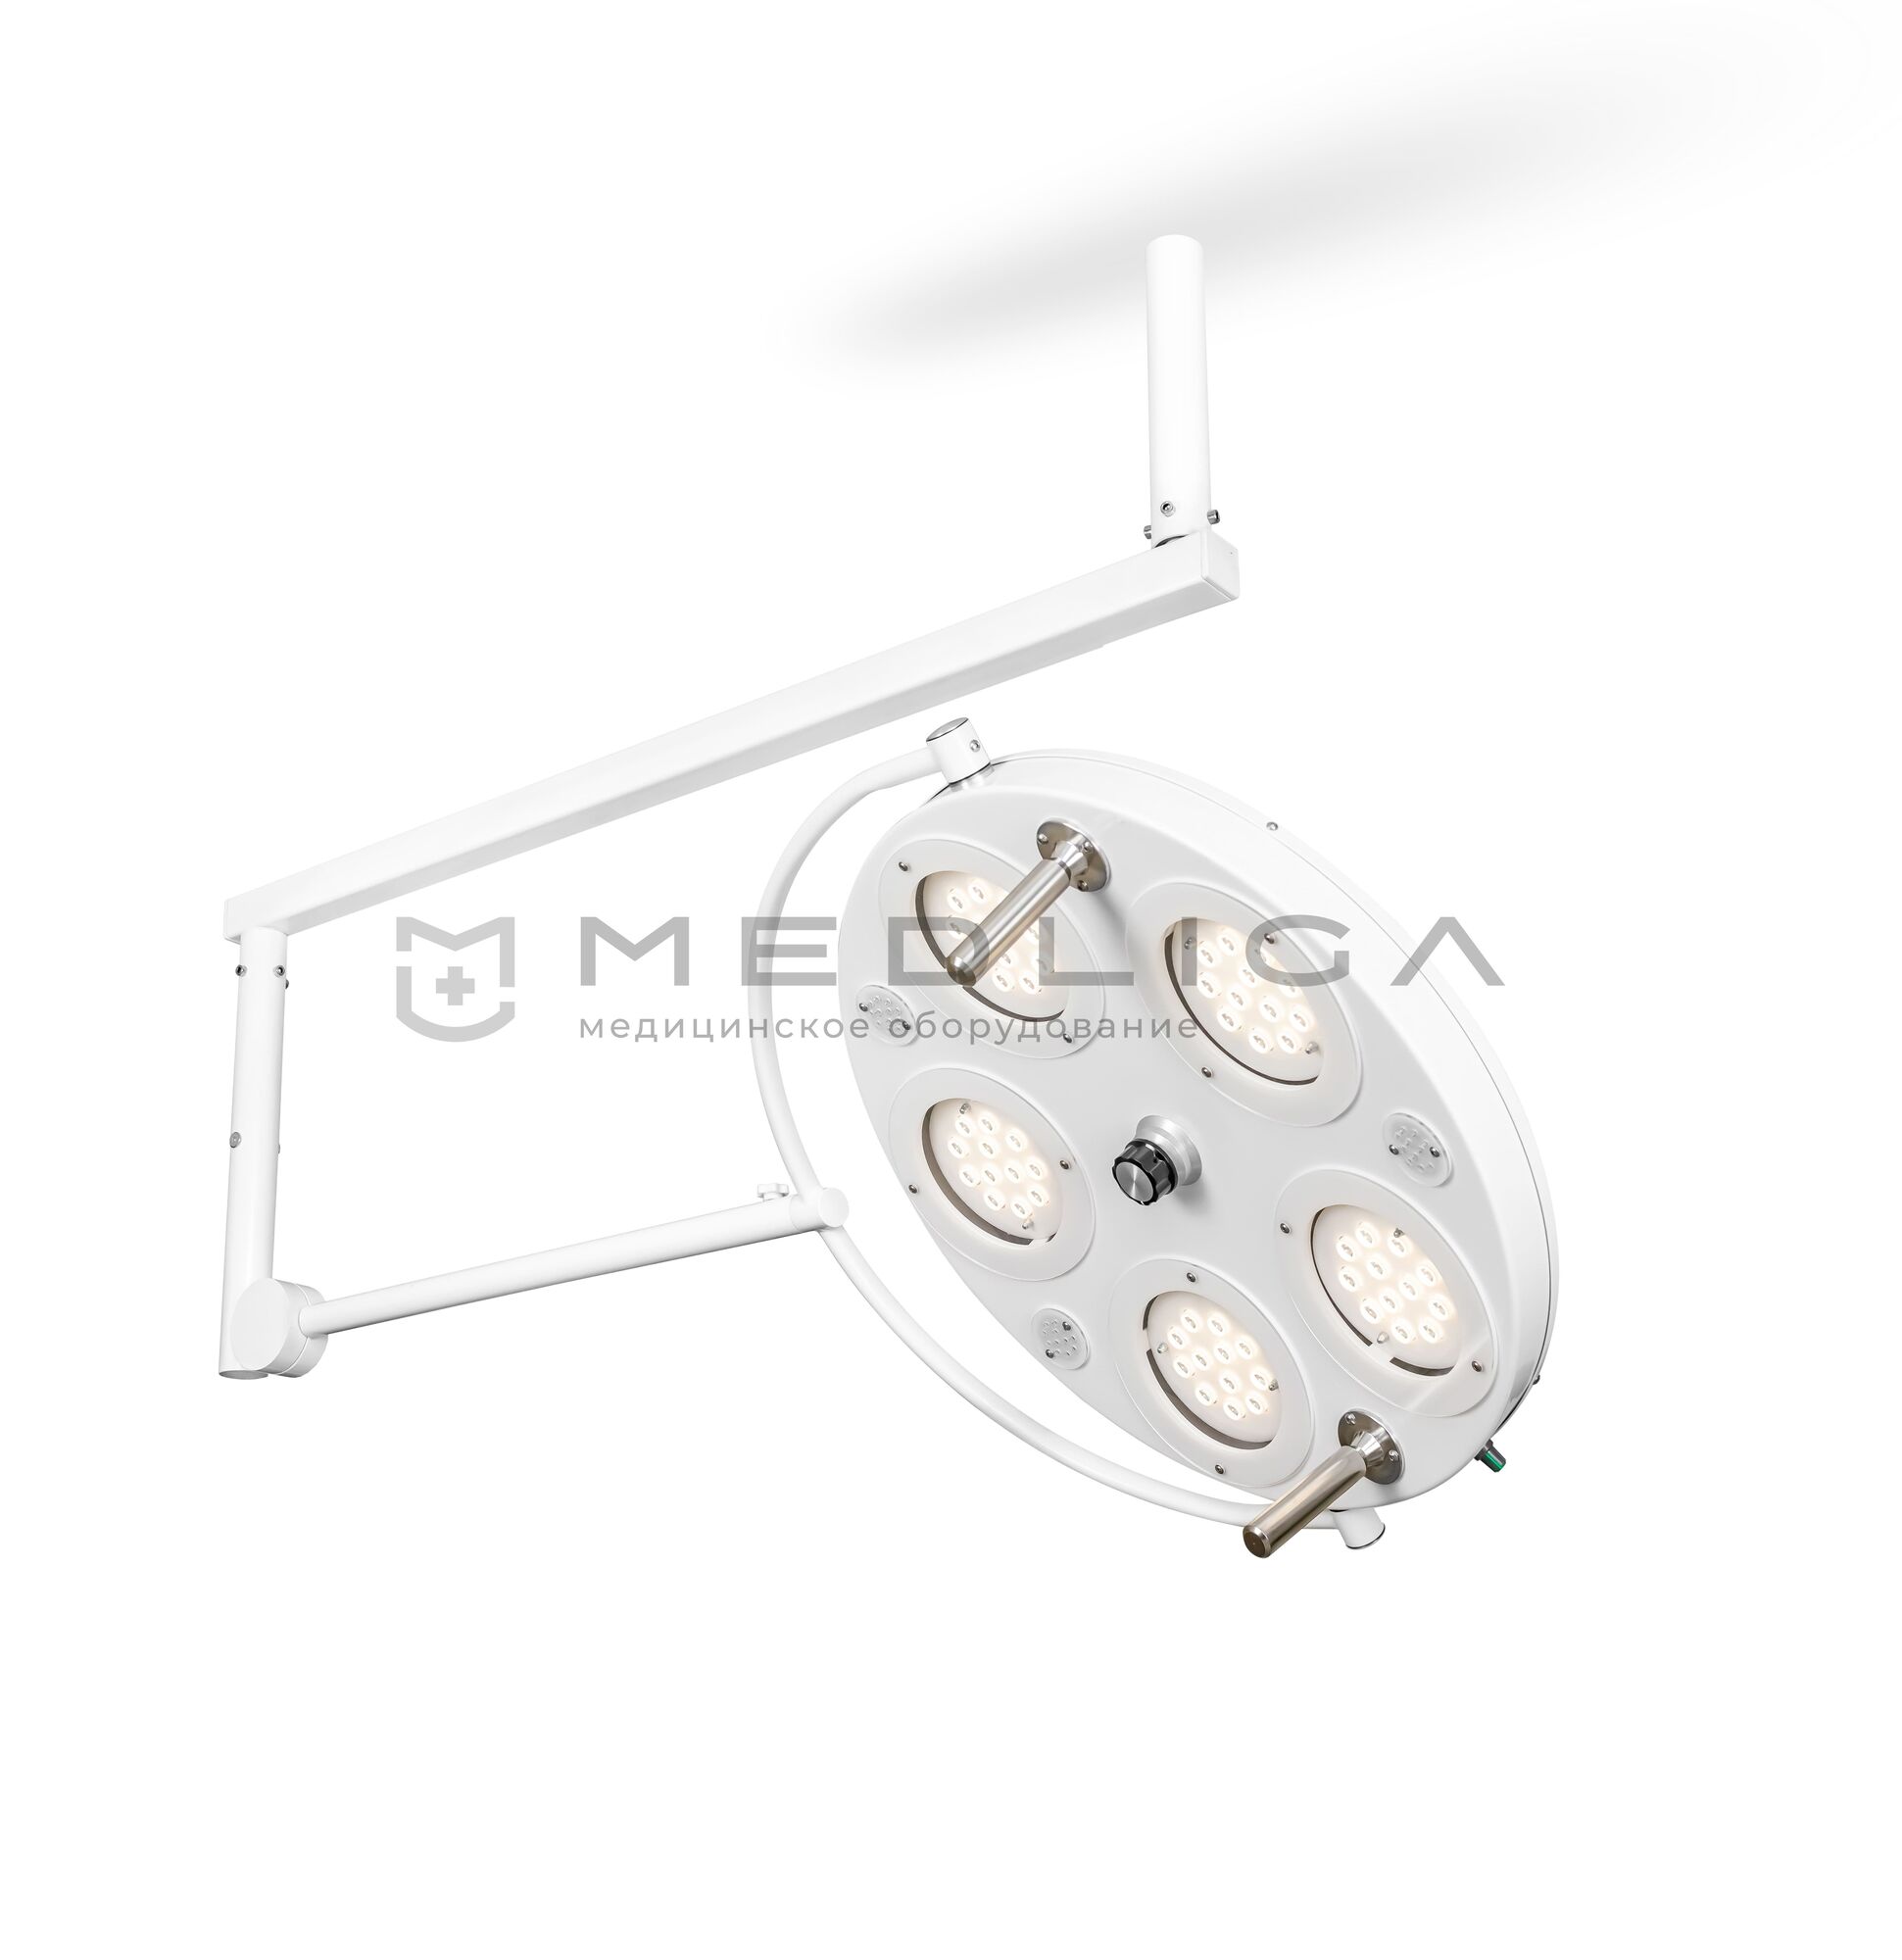 Медицинский хирургический светильник FotonFly 6S